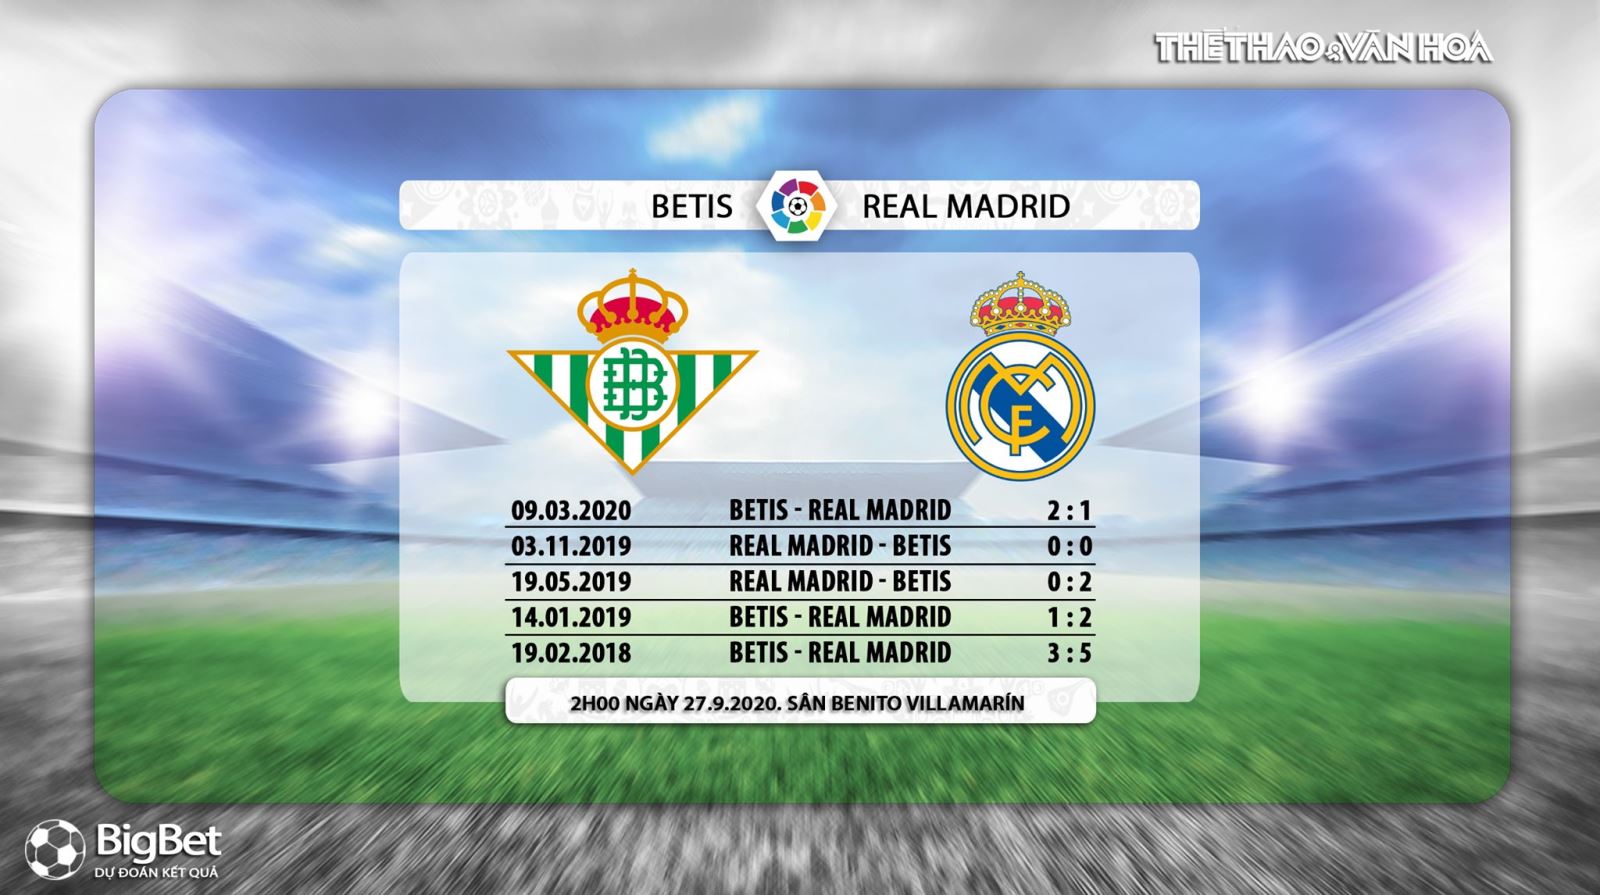 Betis vs Real Madrid, nhận định bóng đá Betis vs Real Madrid, Real Betis, nhận định Betis vs Real Madrid, nhận định bóng đá bóng đá, nhận định bóng đá